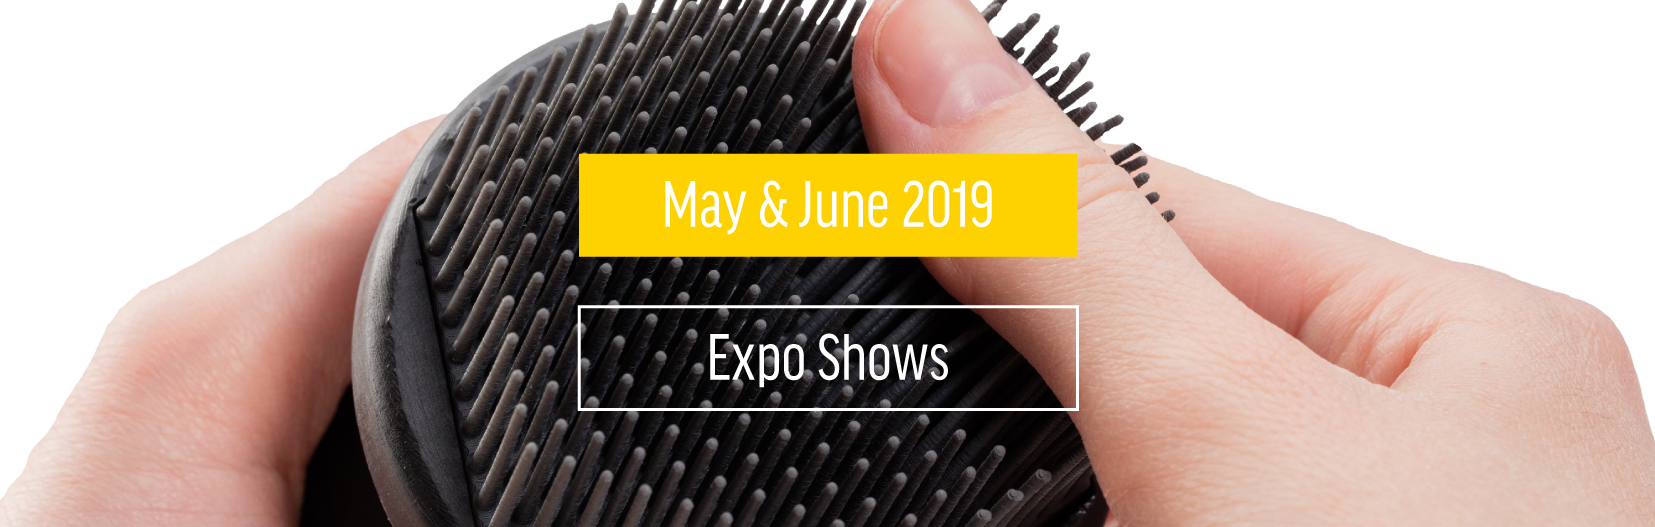 Upcoming May & June 2019 Expo Shows